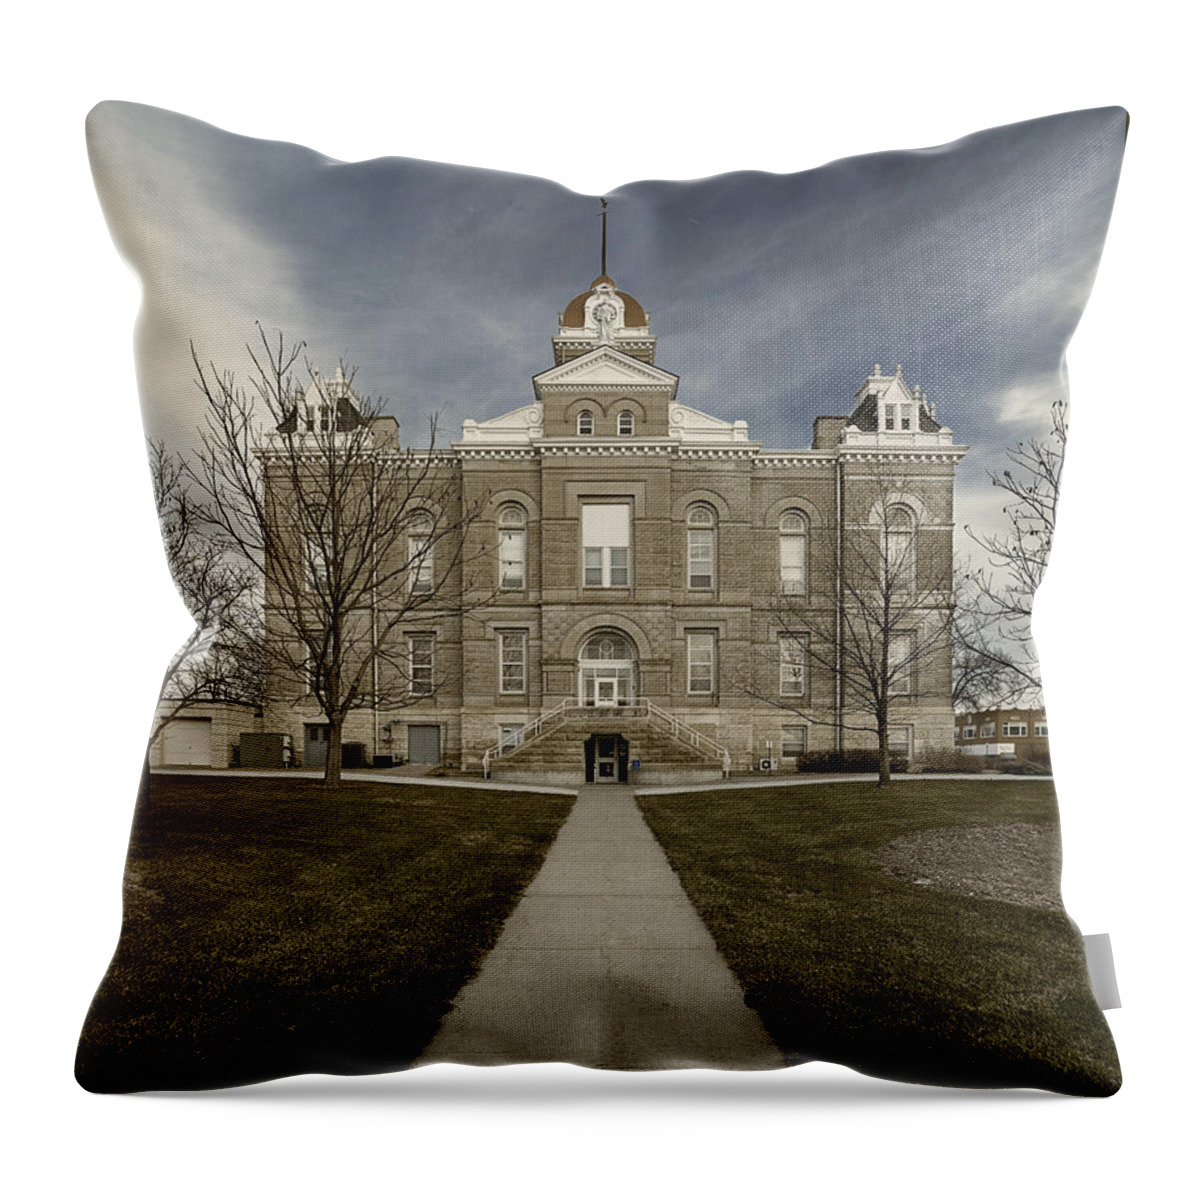 Jefferson County Courthouse Throw Pillow featuring the photograph Jefferson County Courthouse in Fairbury Nebraska Rural by Art Whitton